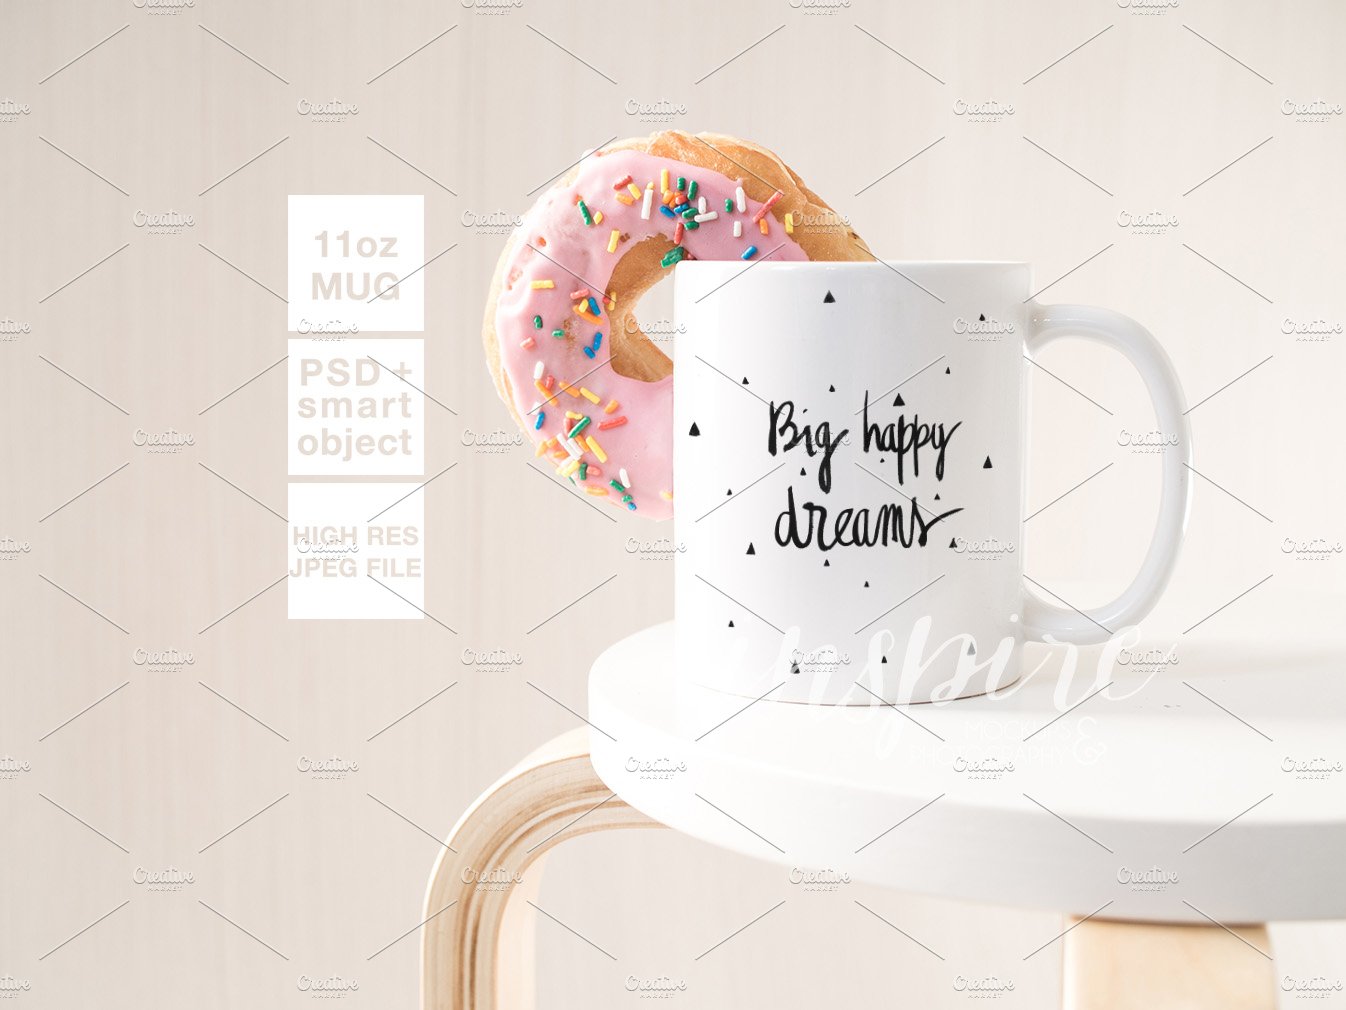 11oz Ceramic Mug Mockup + Donut PSD preview image.